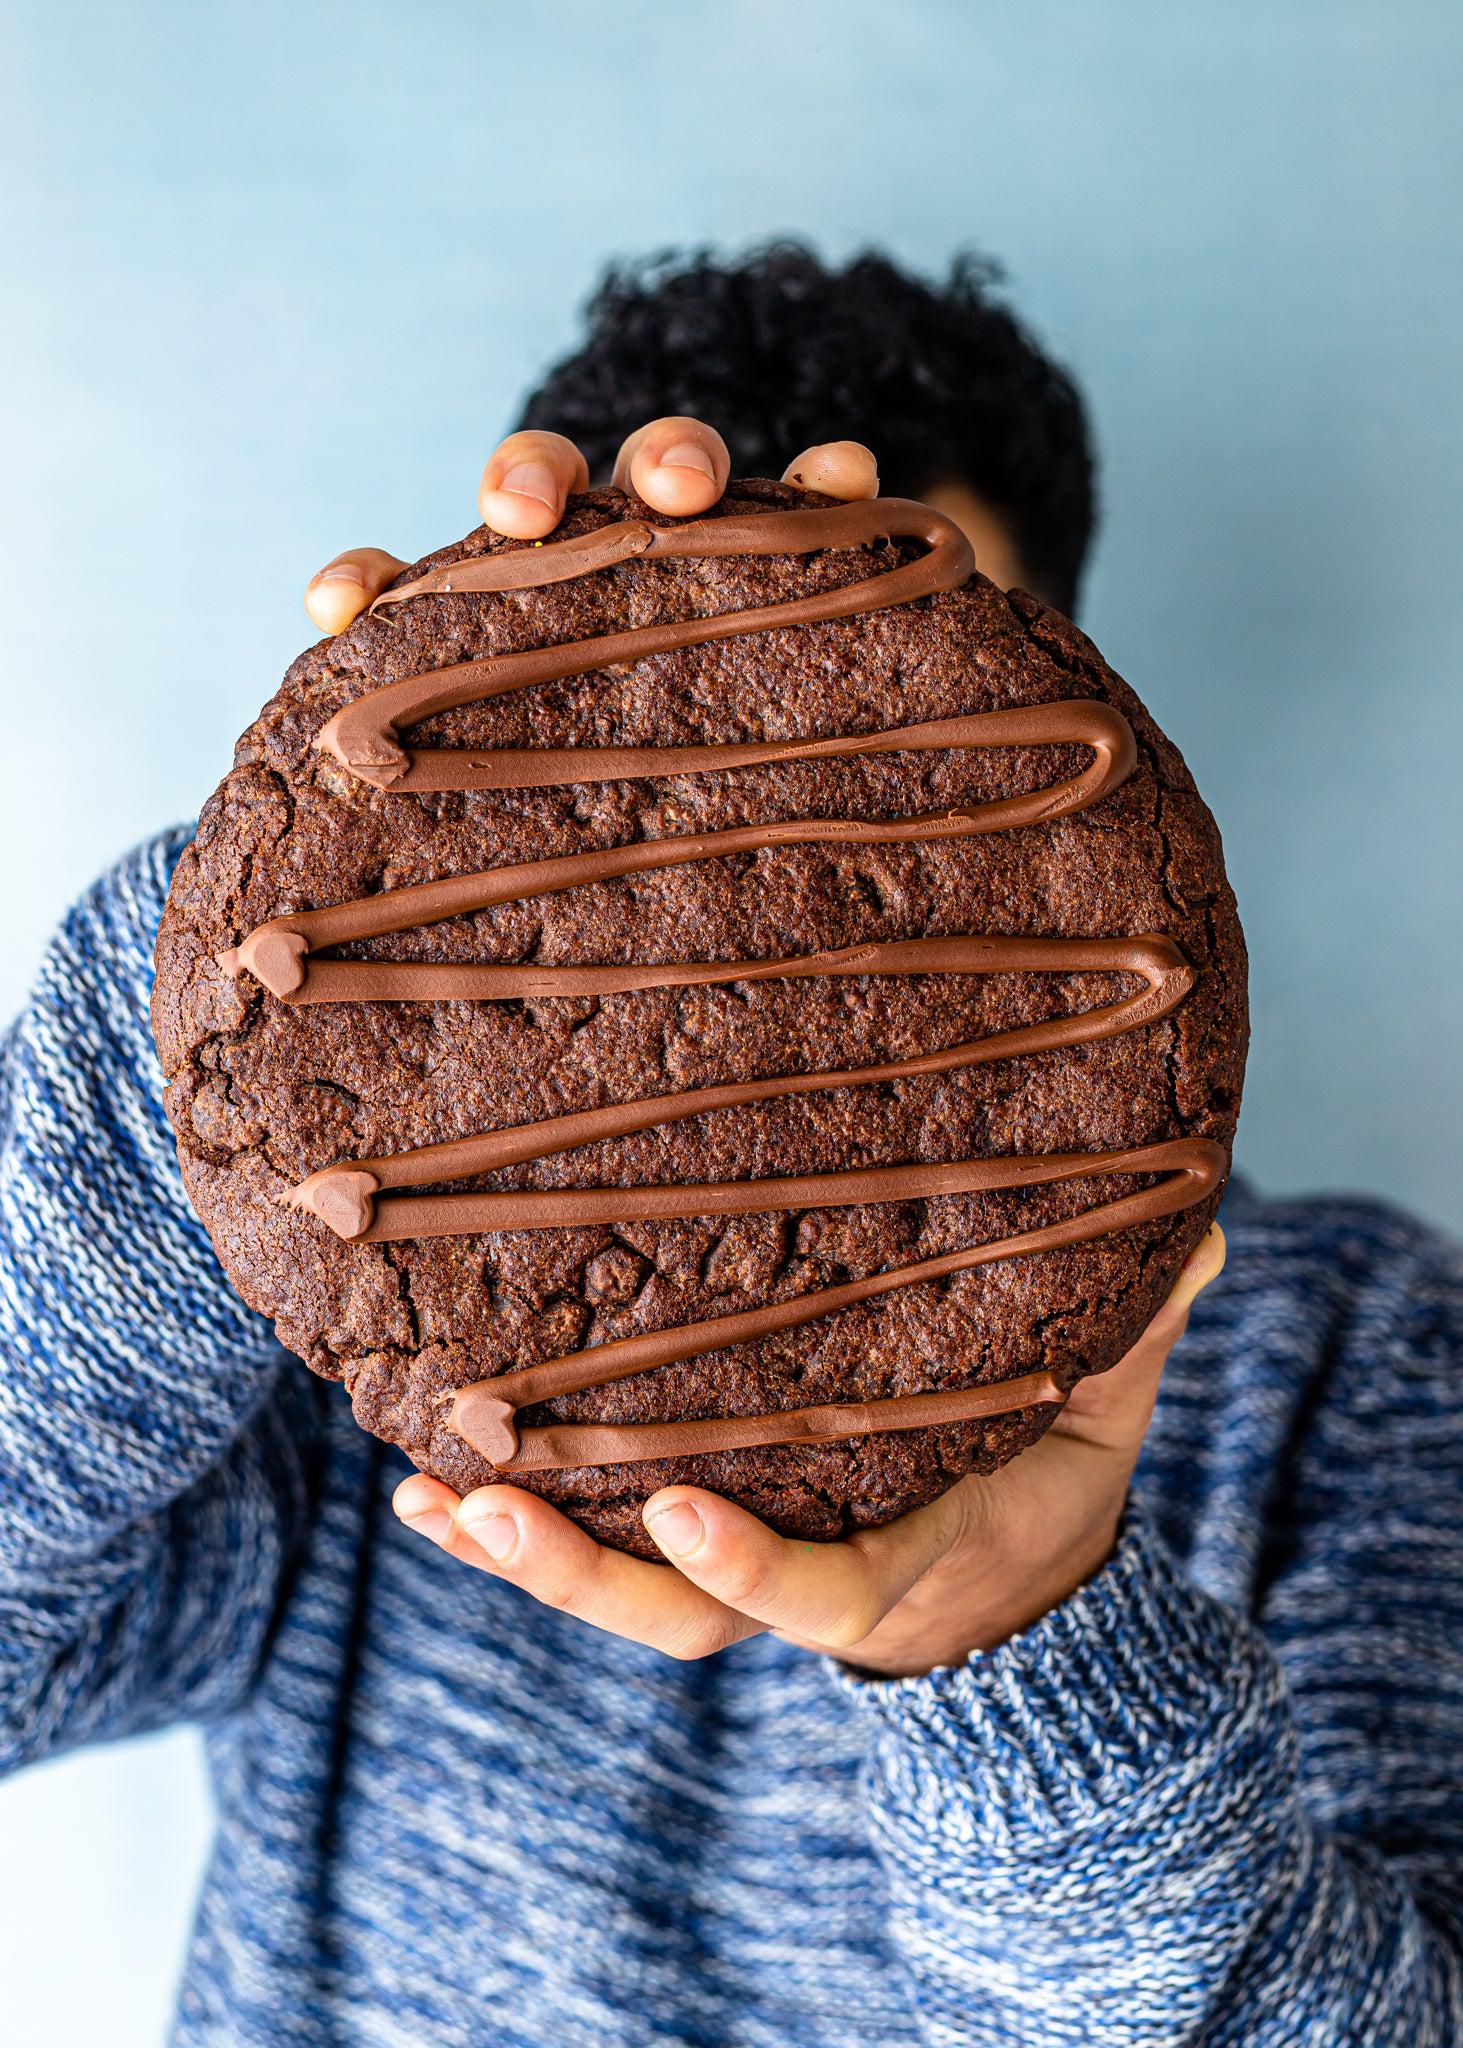 1kg Tella Cookie /w Nutella- BIGG Brownies & THICC Cookies - New York Style Cookies